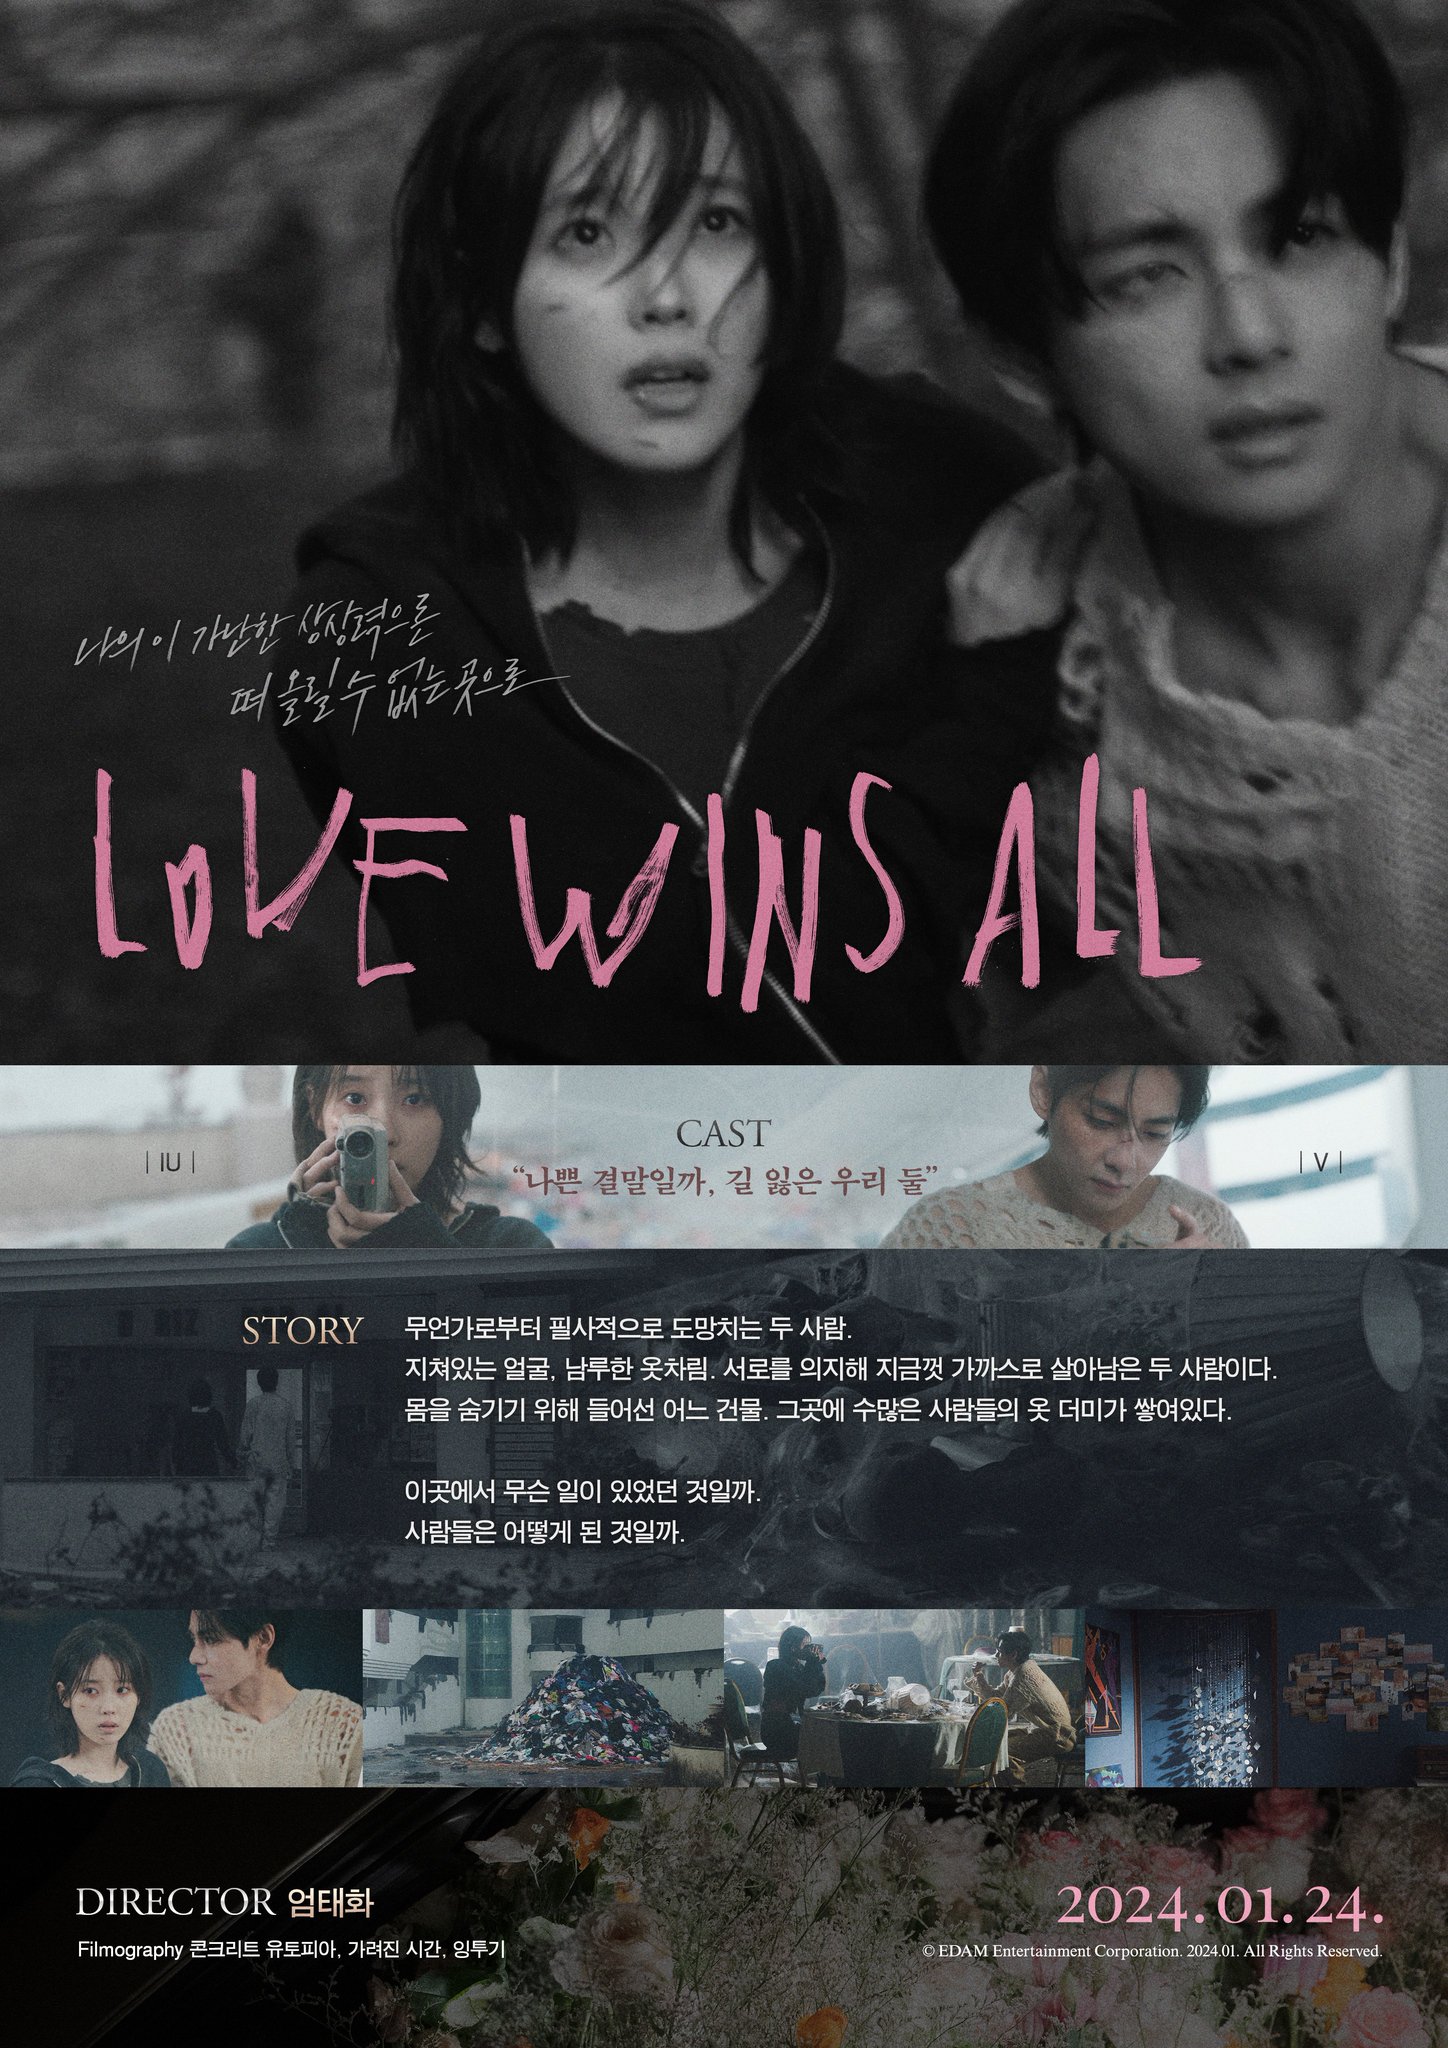 [閒聊] IU 'Love wins all' MV 宣傳預告